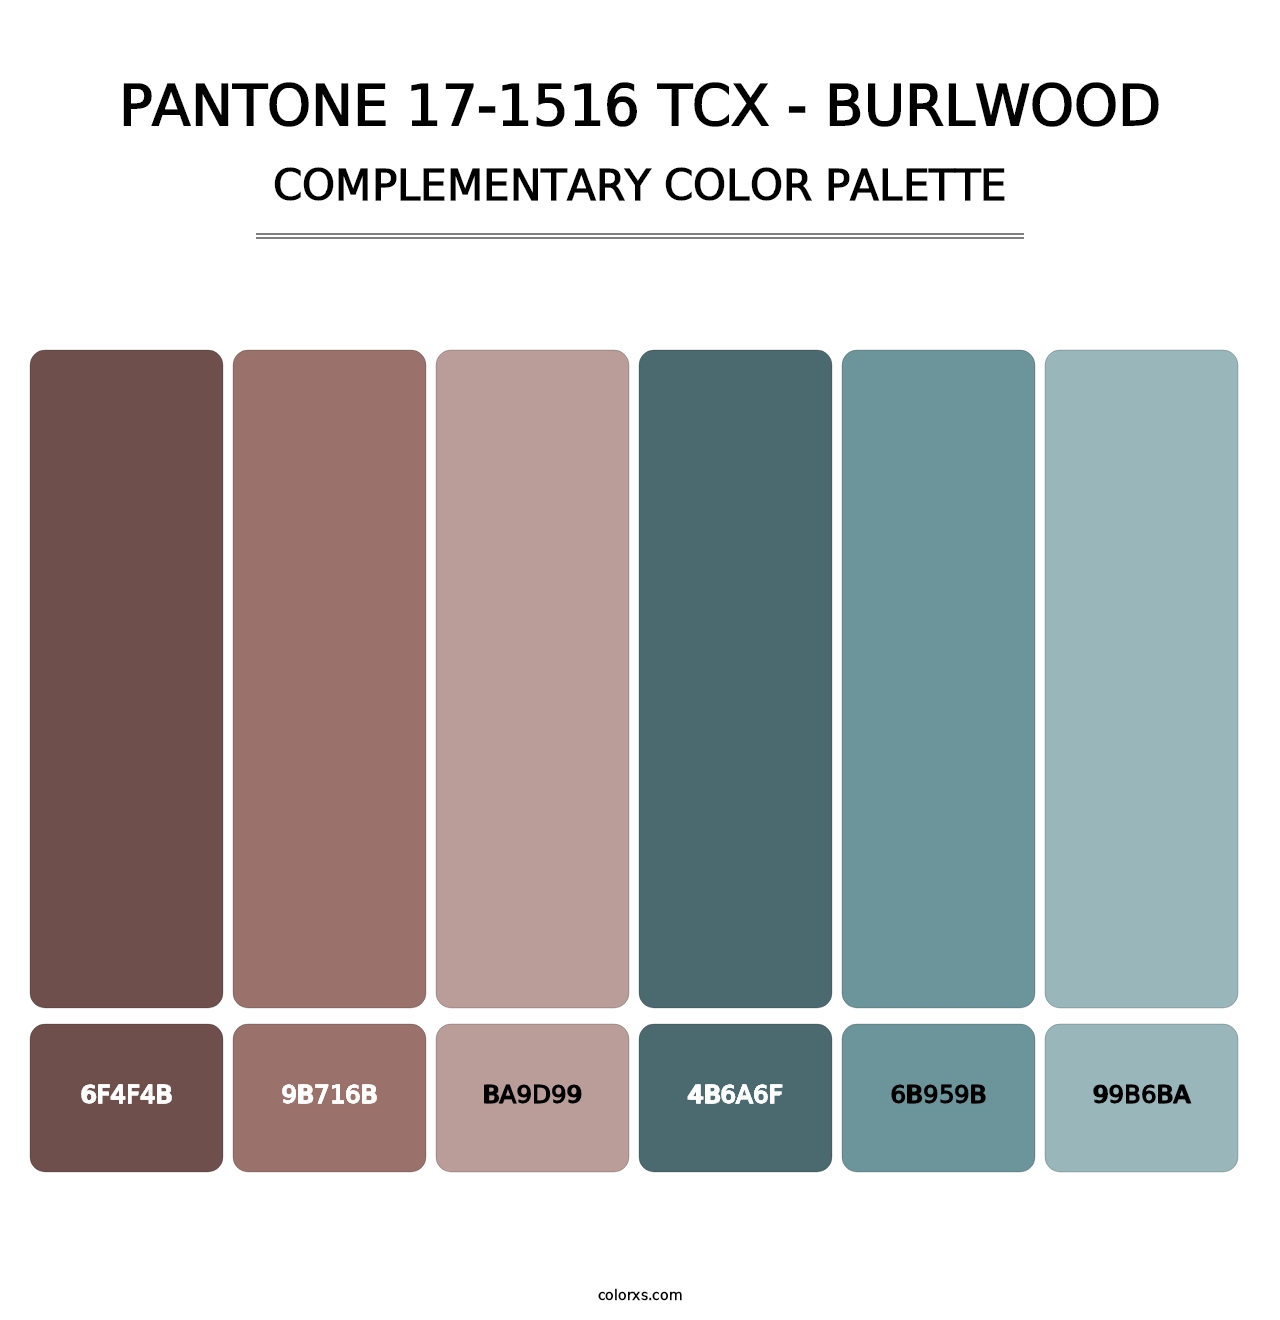 PANTONE 17-1516 TCX - Burlwood - Complementary Color Palette